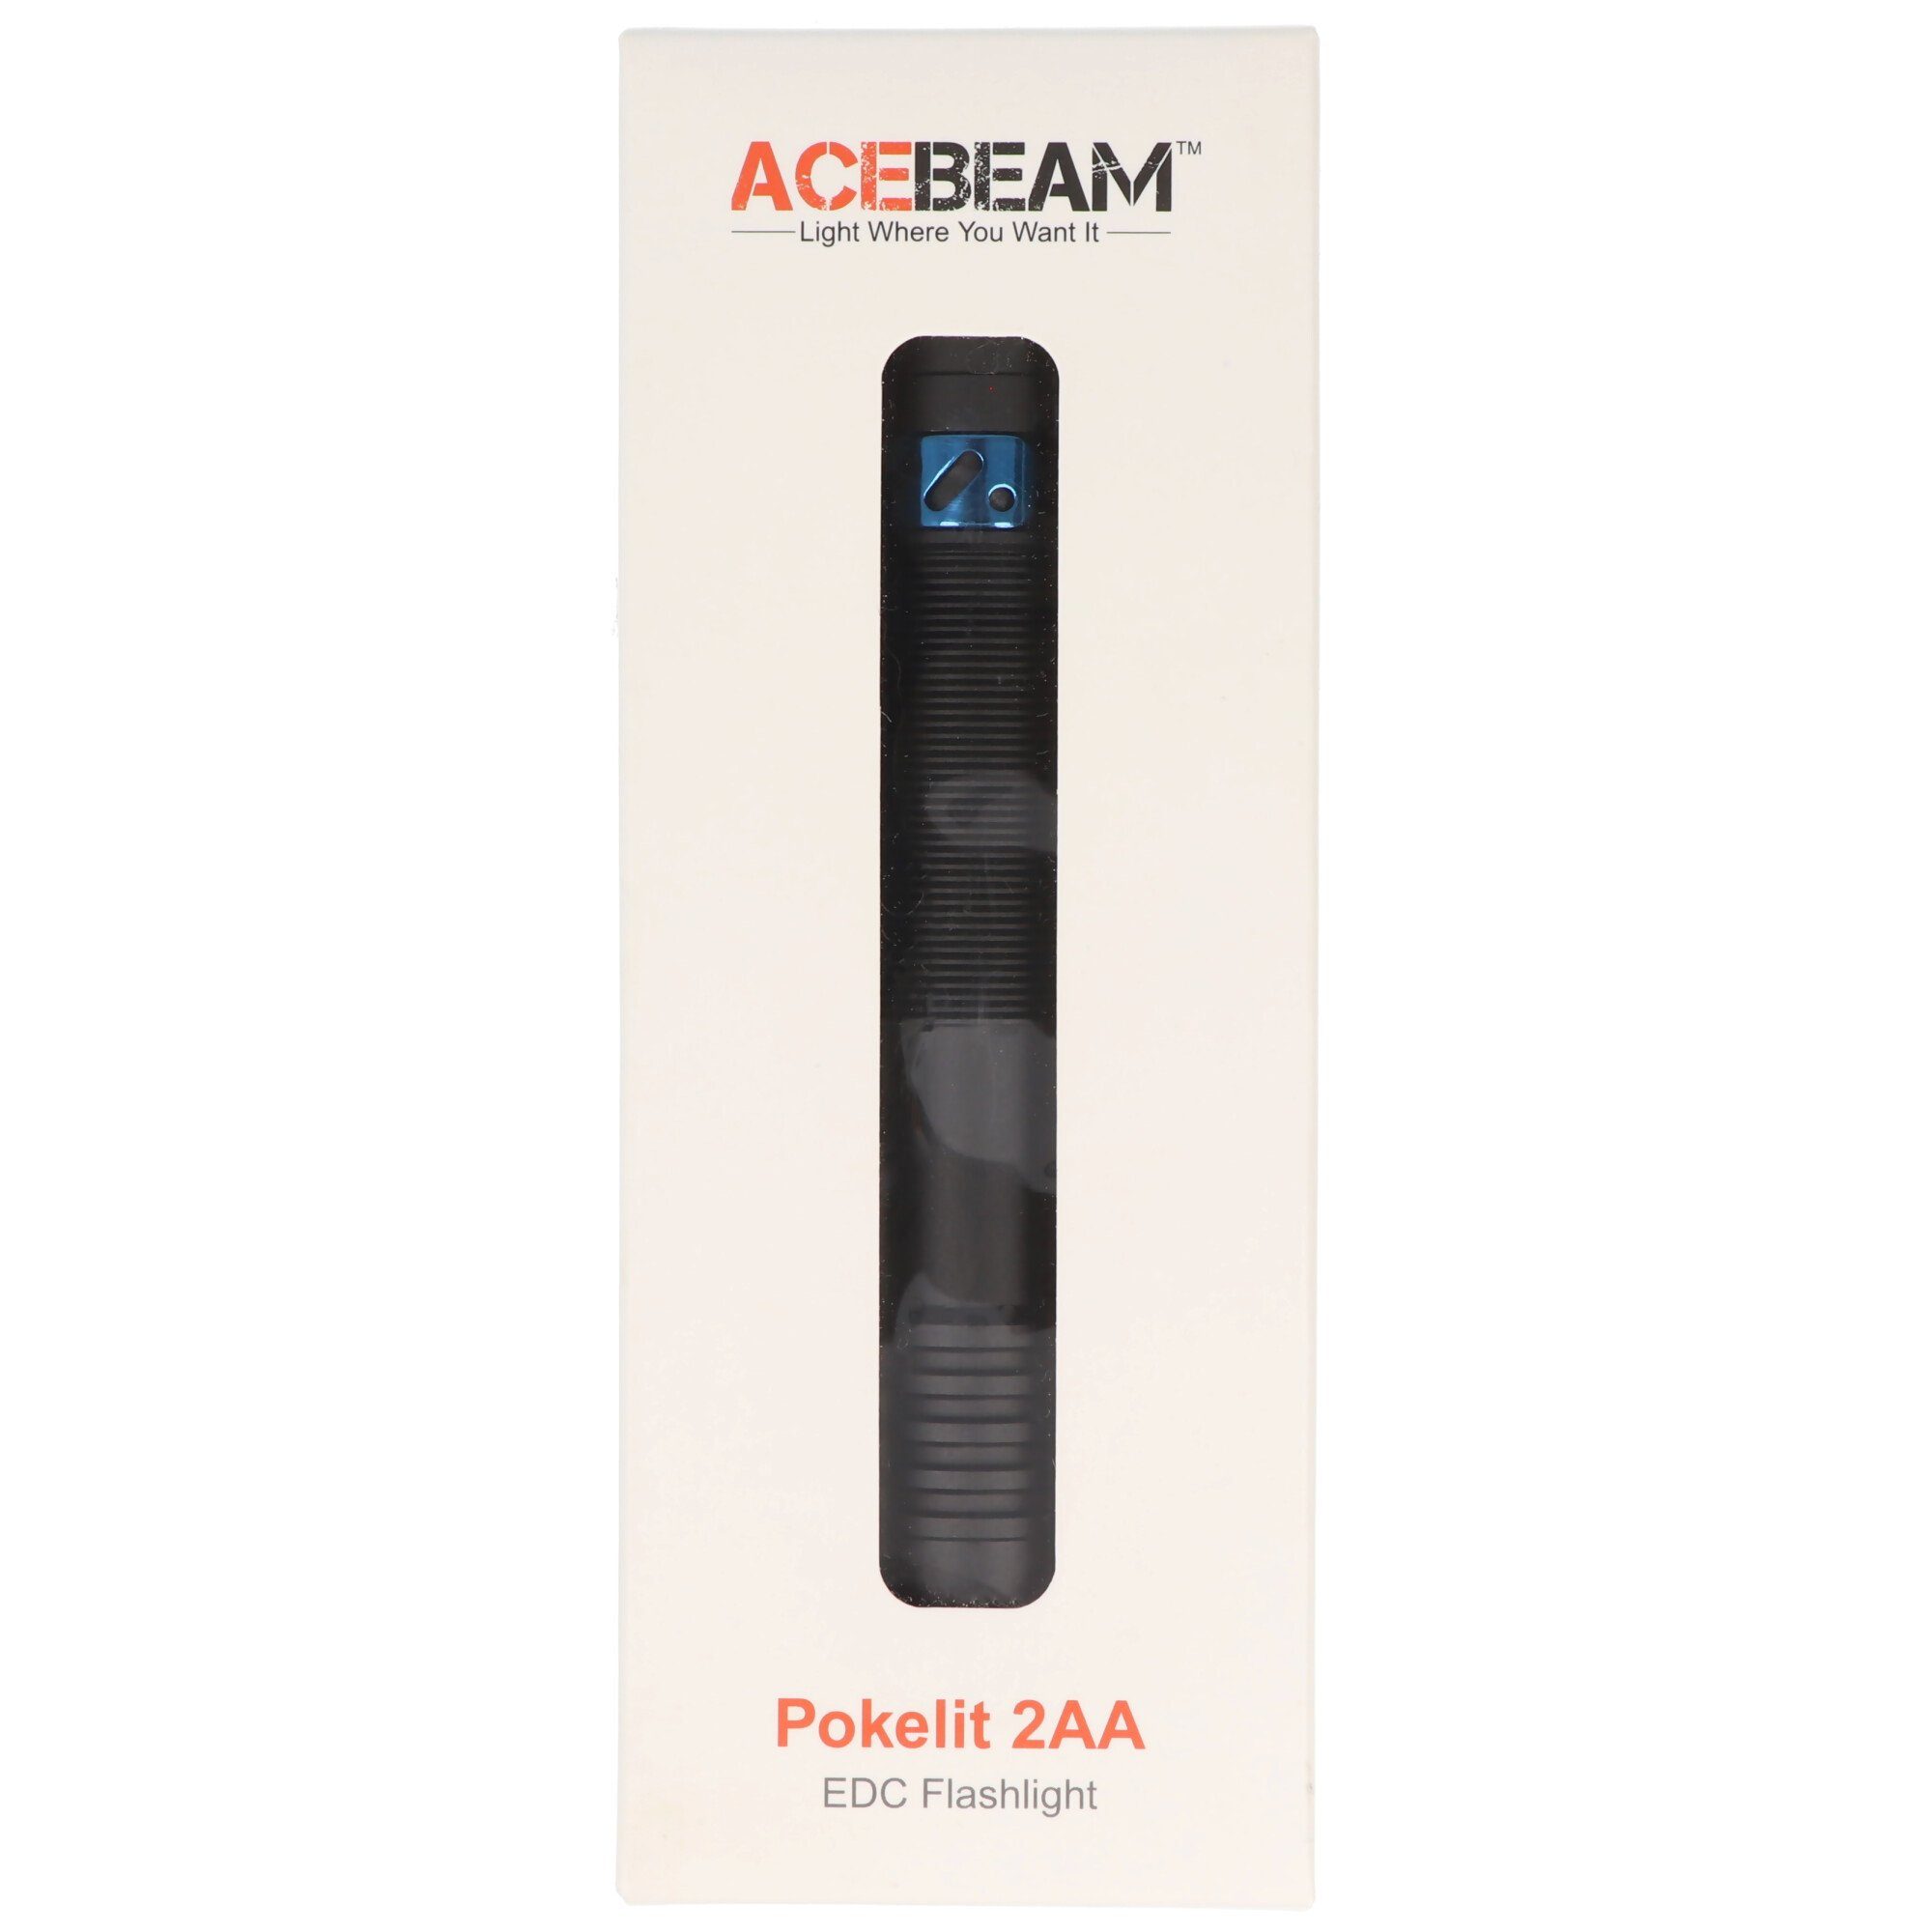 600 den Lumen, Acebeam AceBeam ideal EDC-Taschenlampe, Taschenlampe für LED Pokelit 2AA Alltag